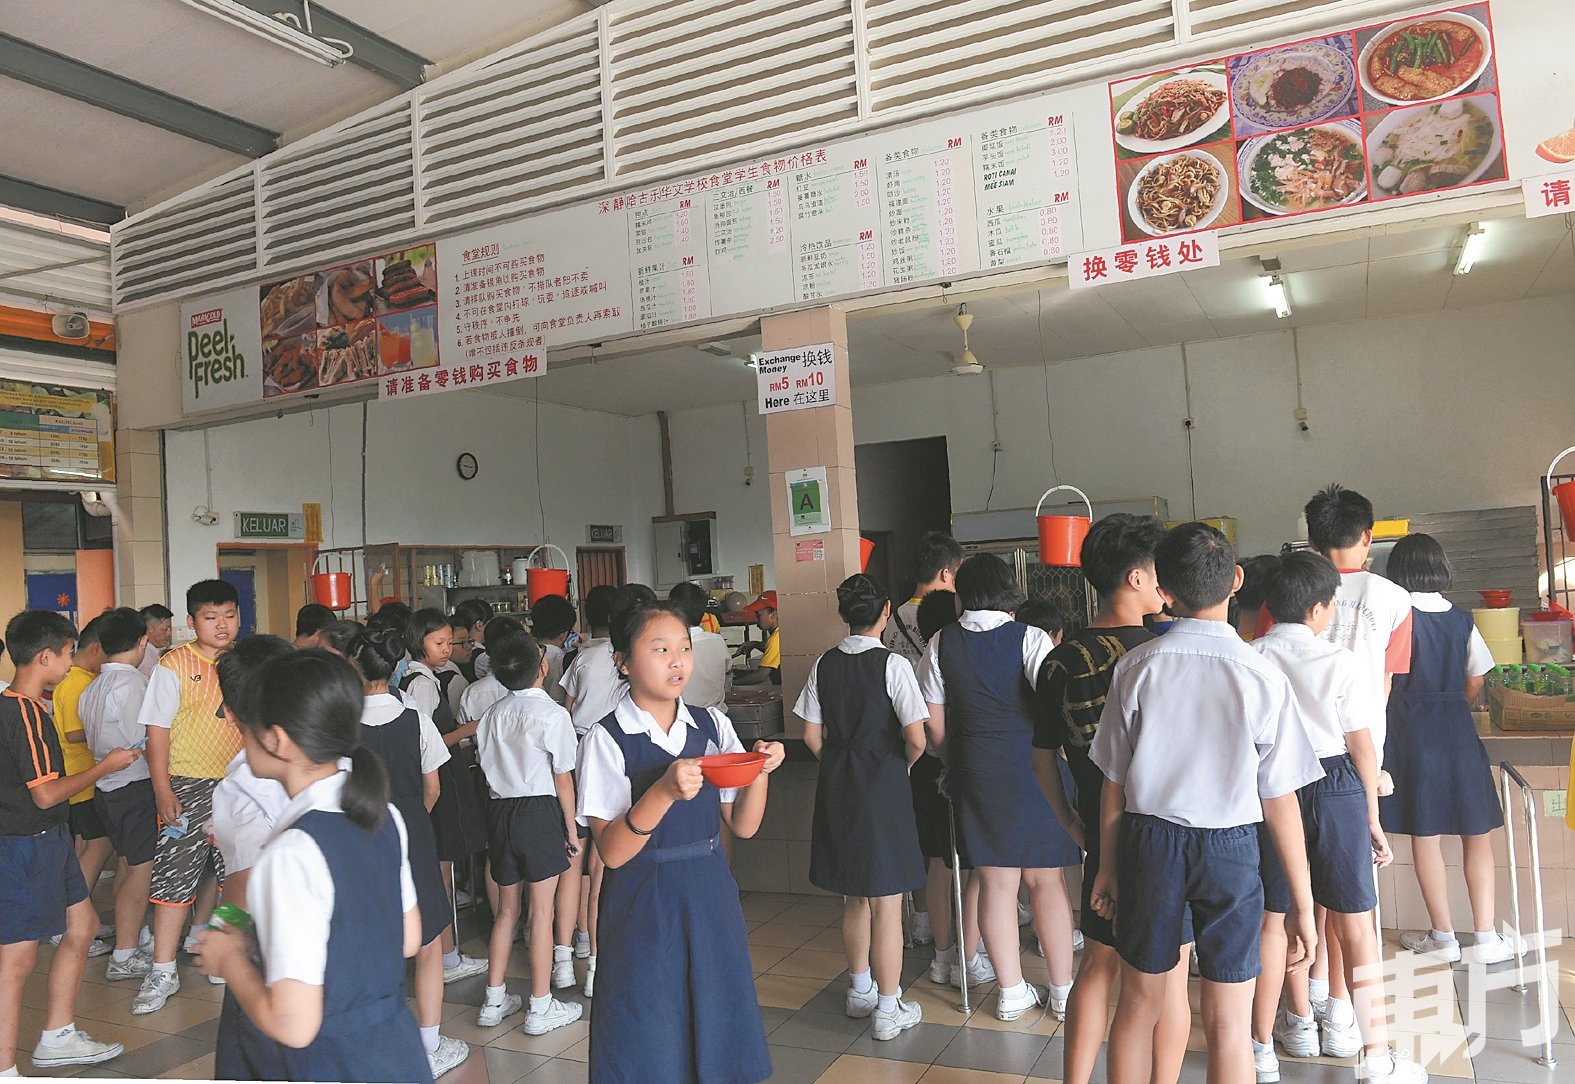 根据观察，国内大部分小学食堂提供的食物种类均以好吃为主，包括煎炸类、零食等均属于低营养价值食物。